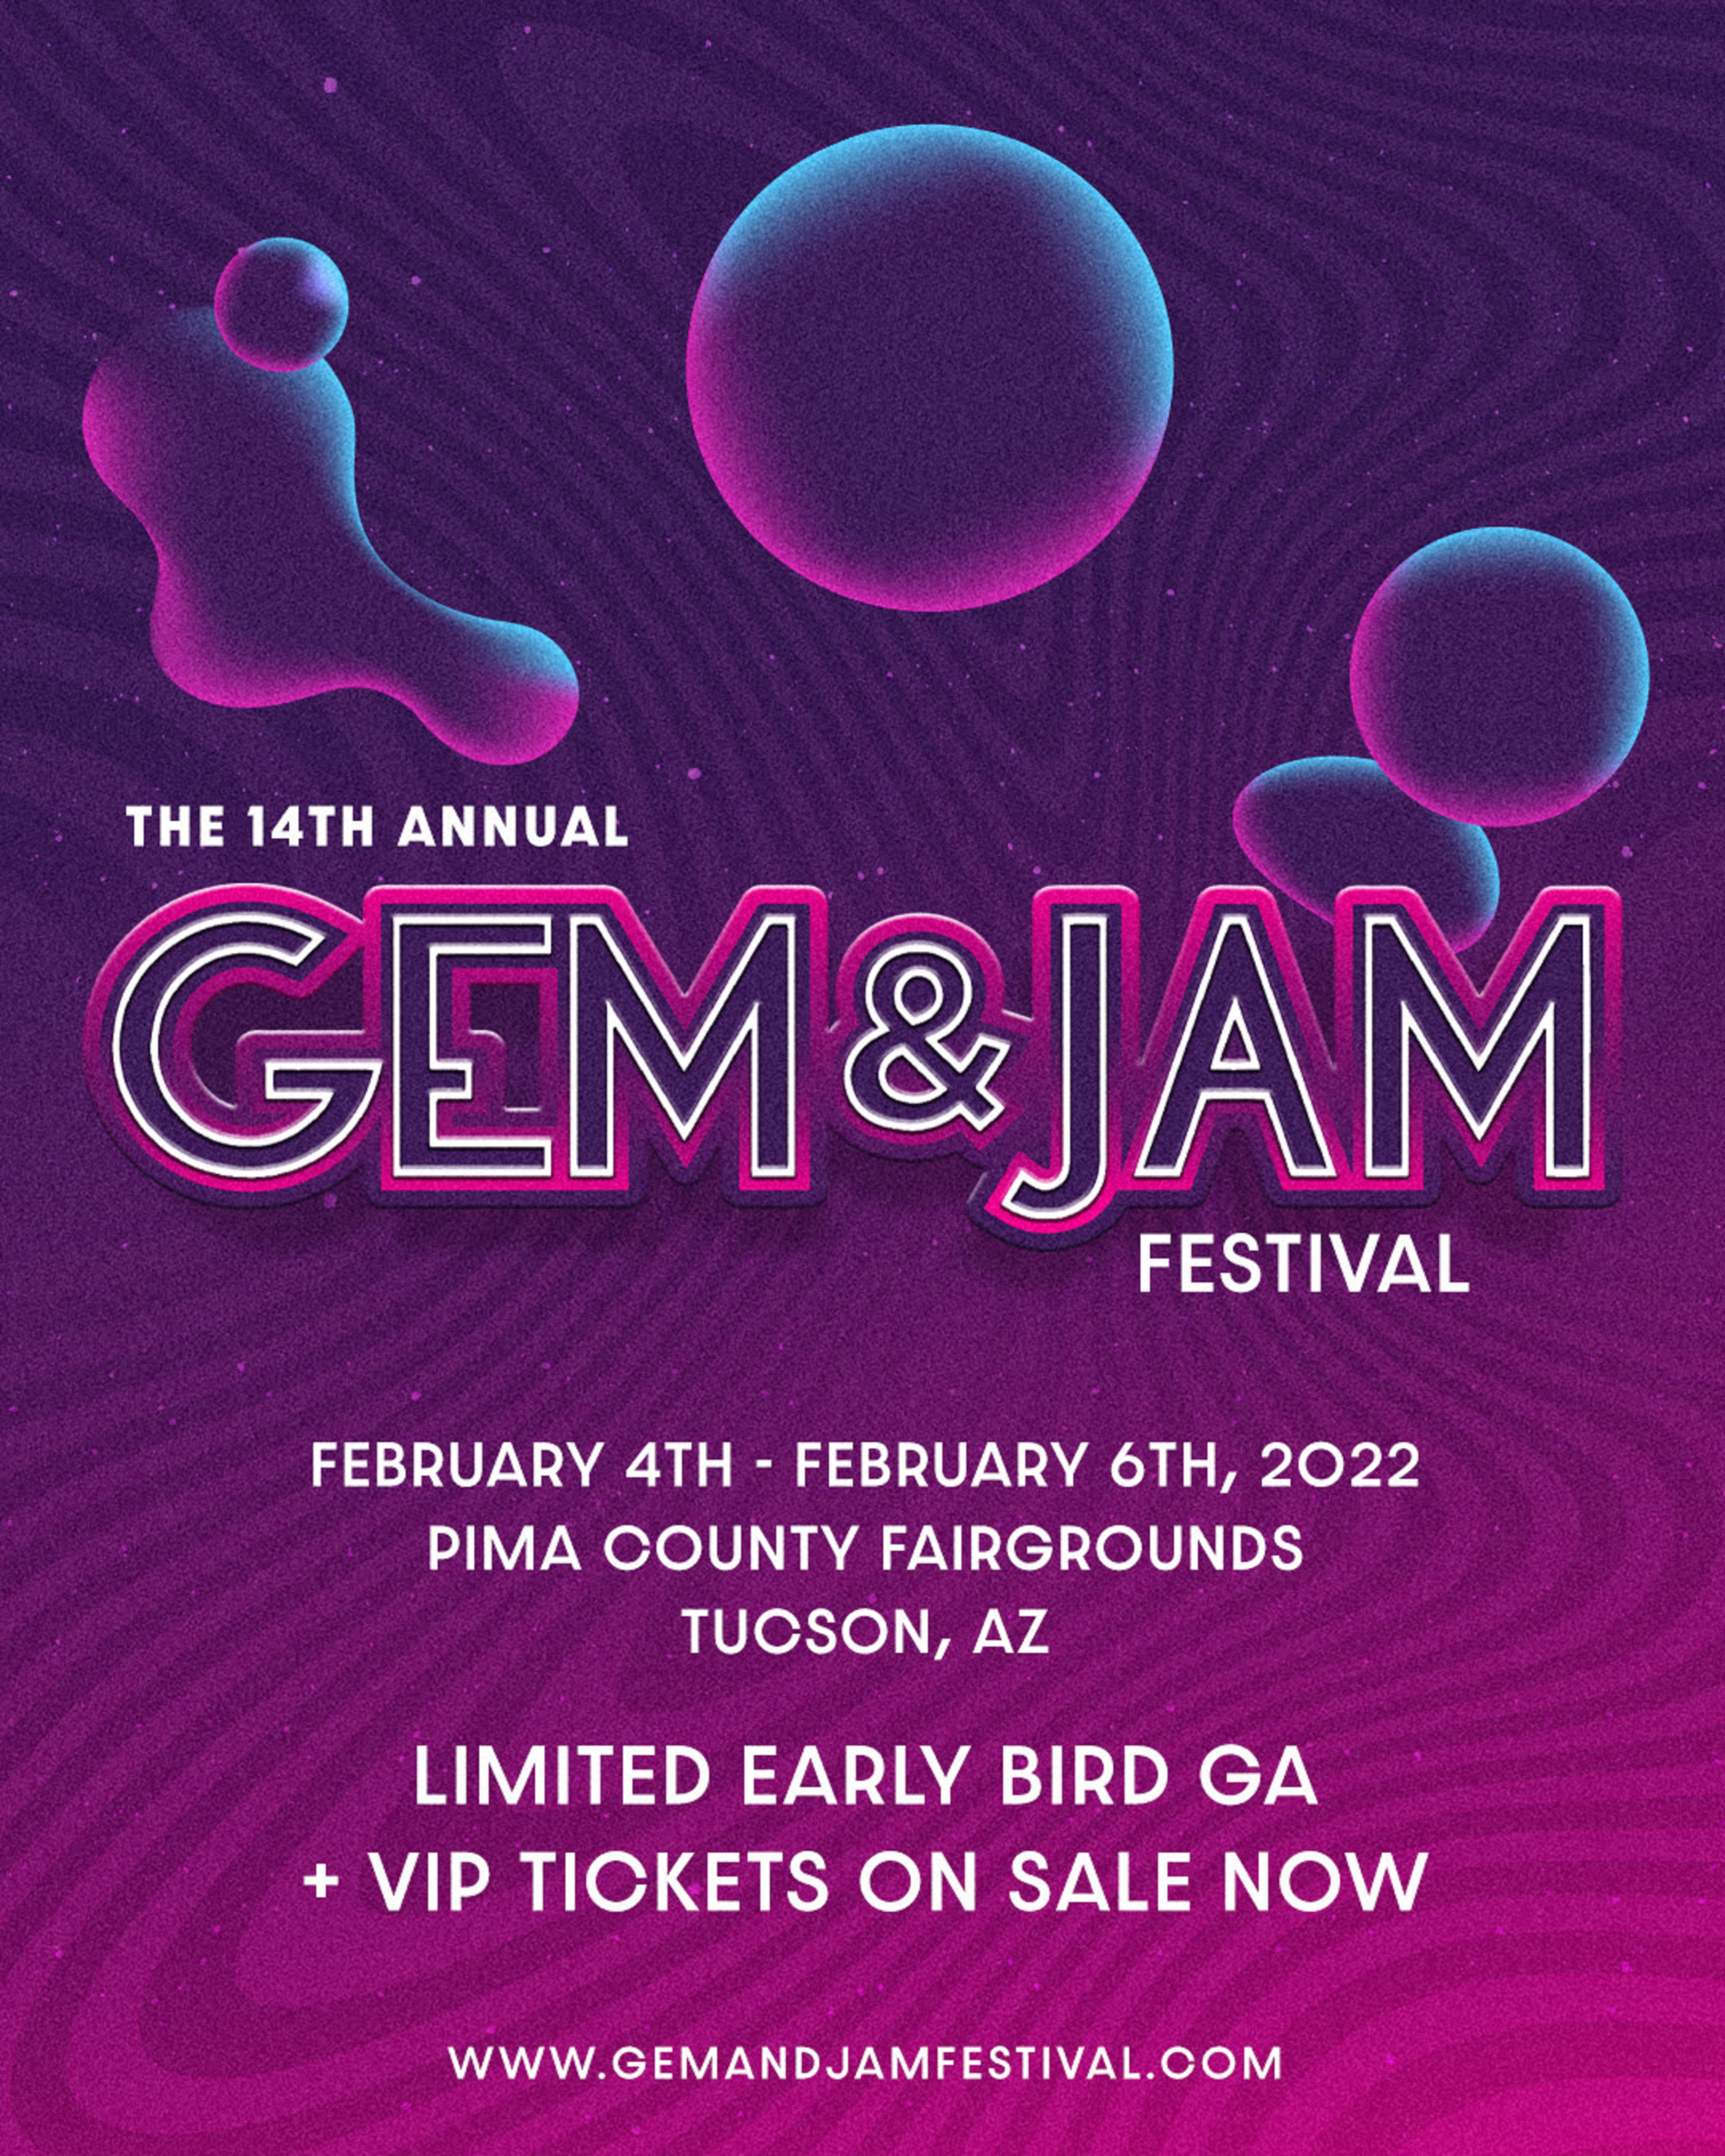 Gem and Jam Festival announces 2022 dates